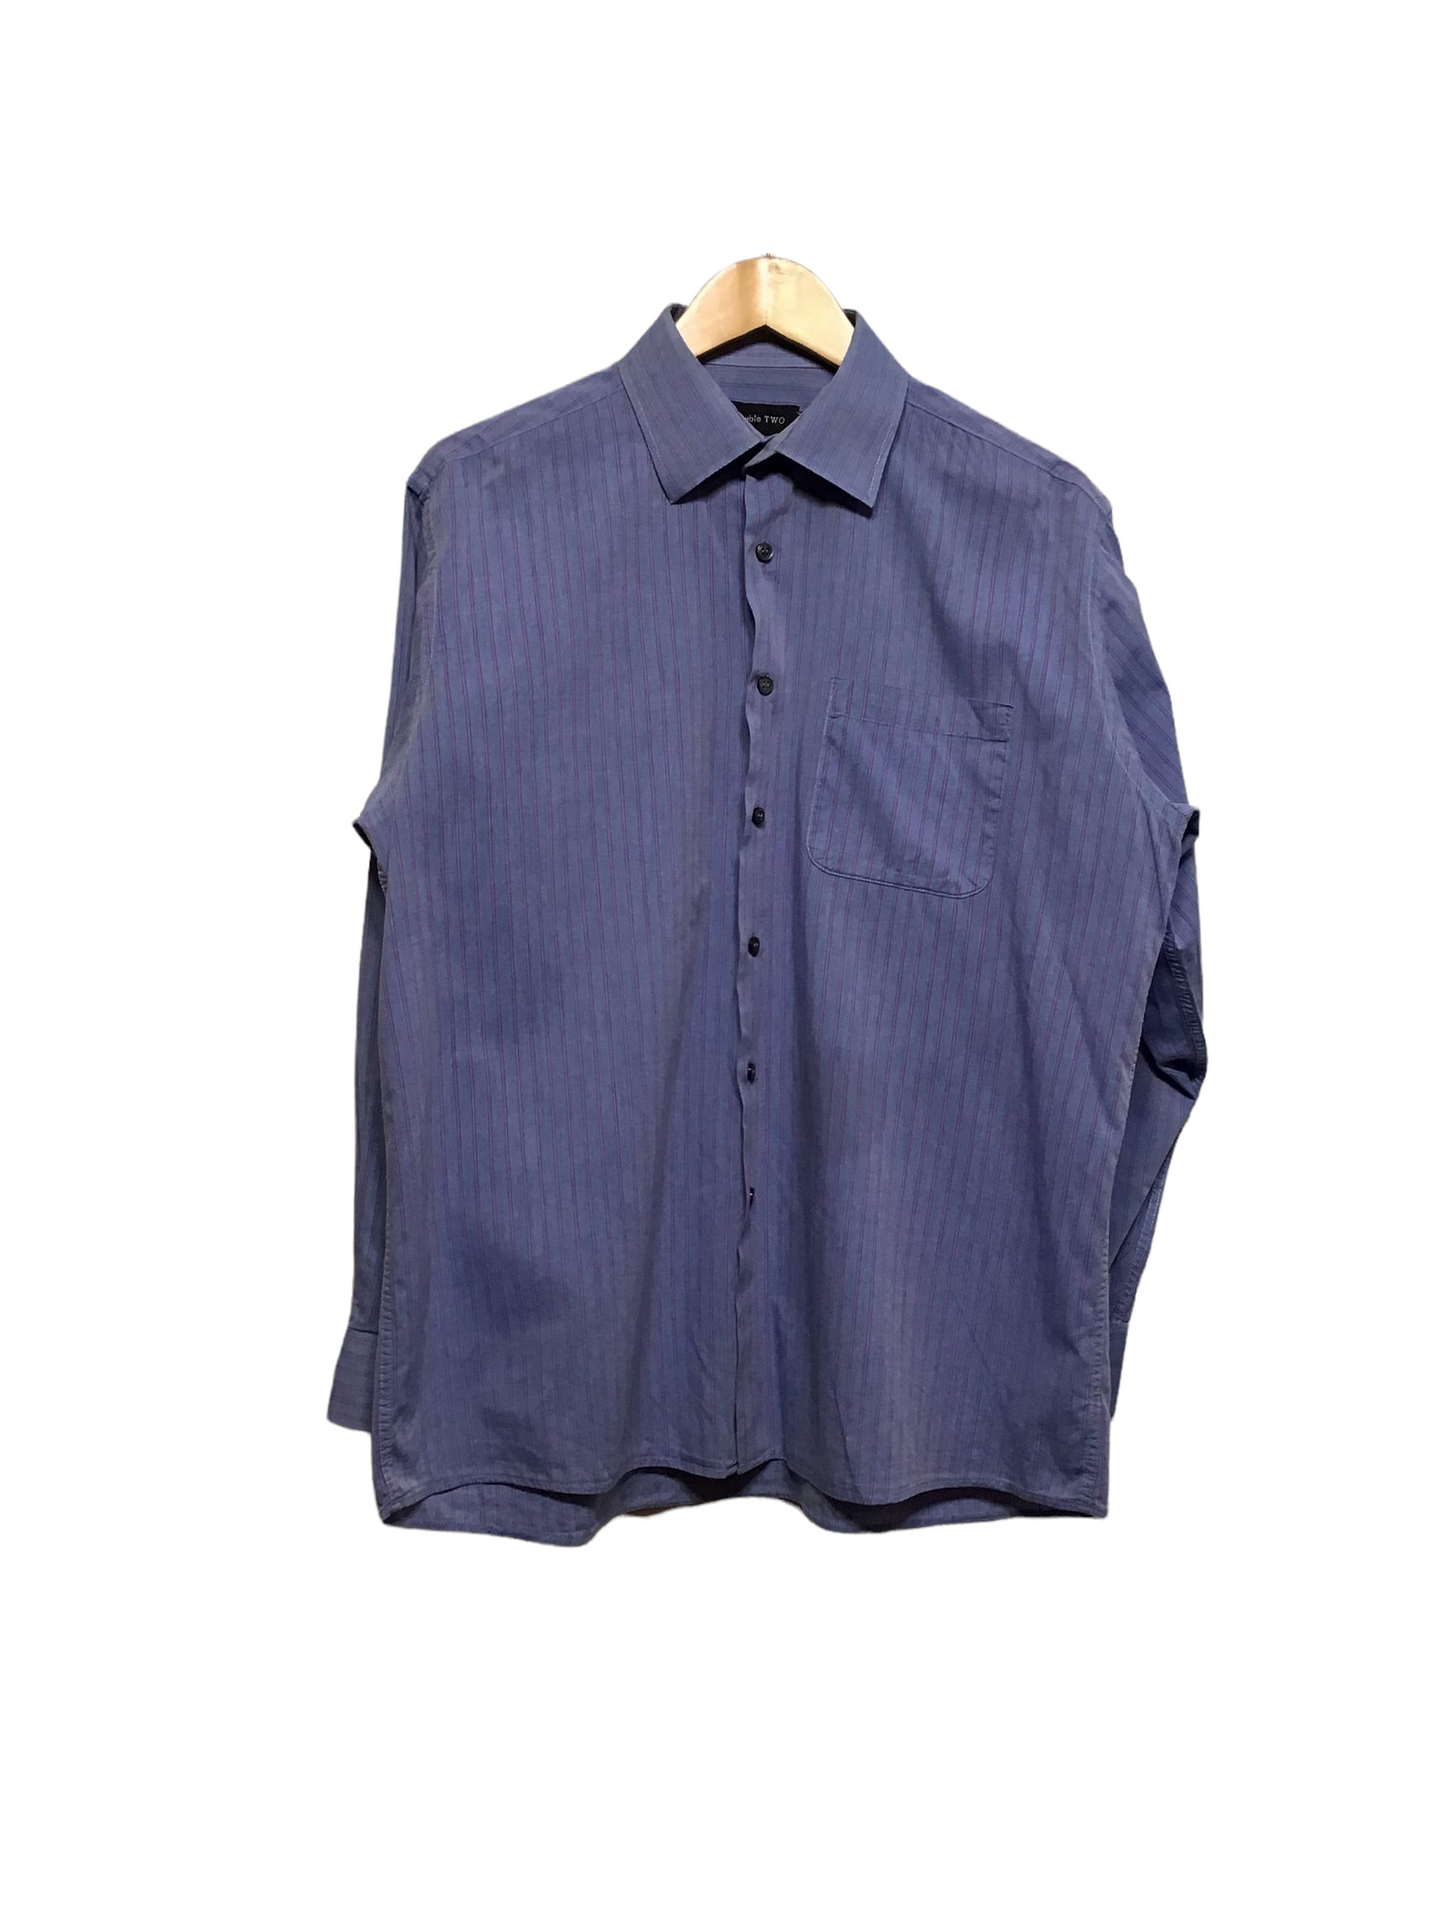 Blue Pinstripe Shirt (Size L)